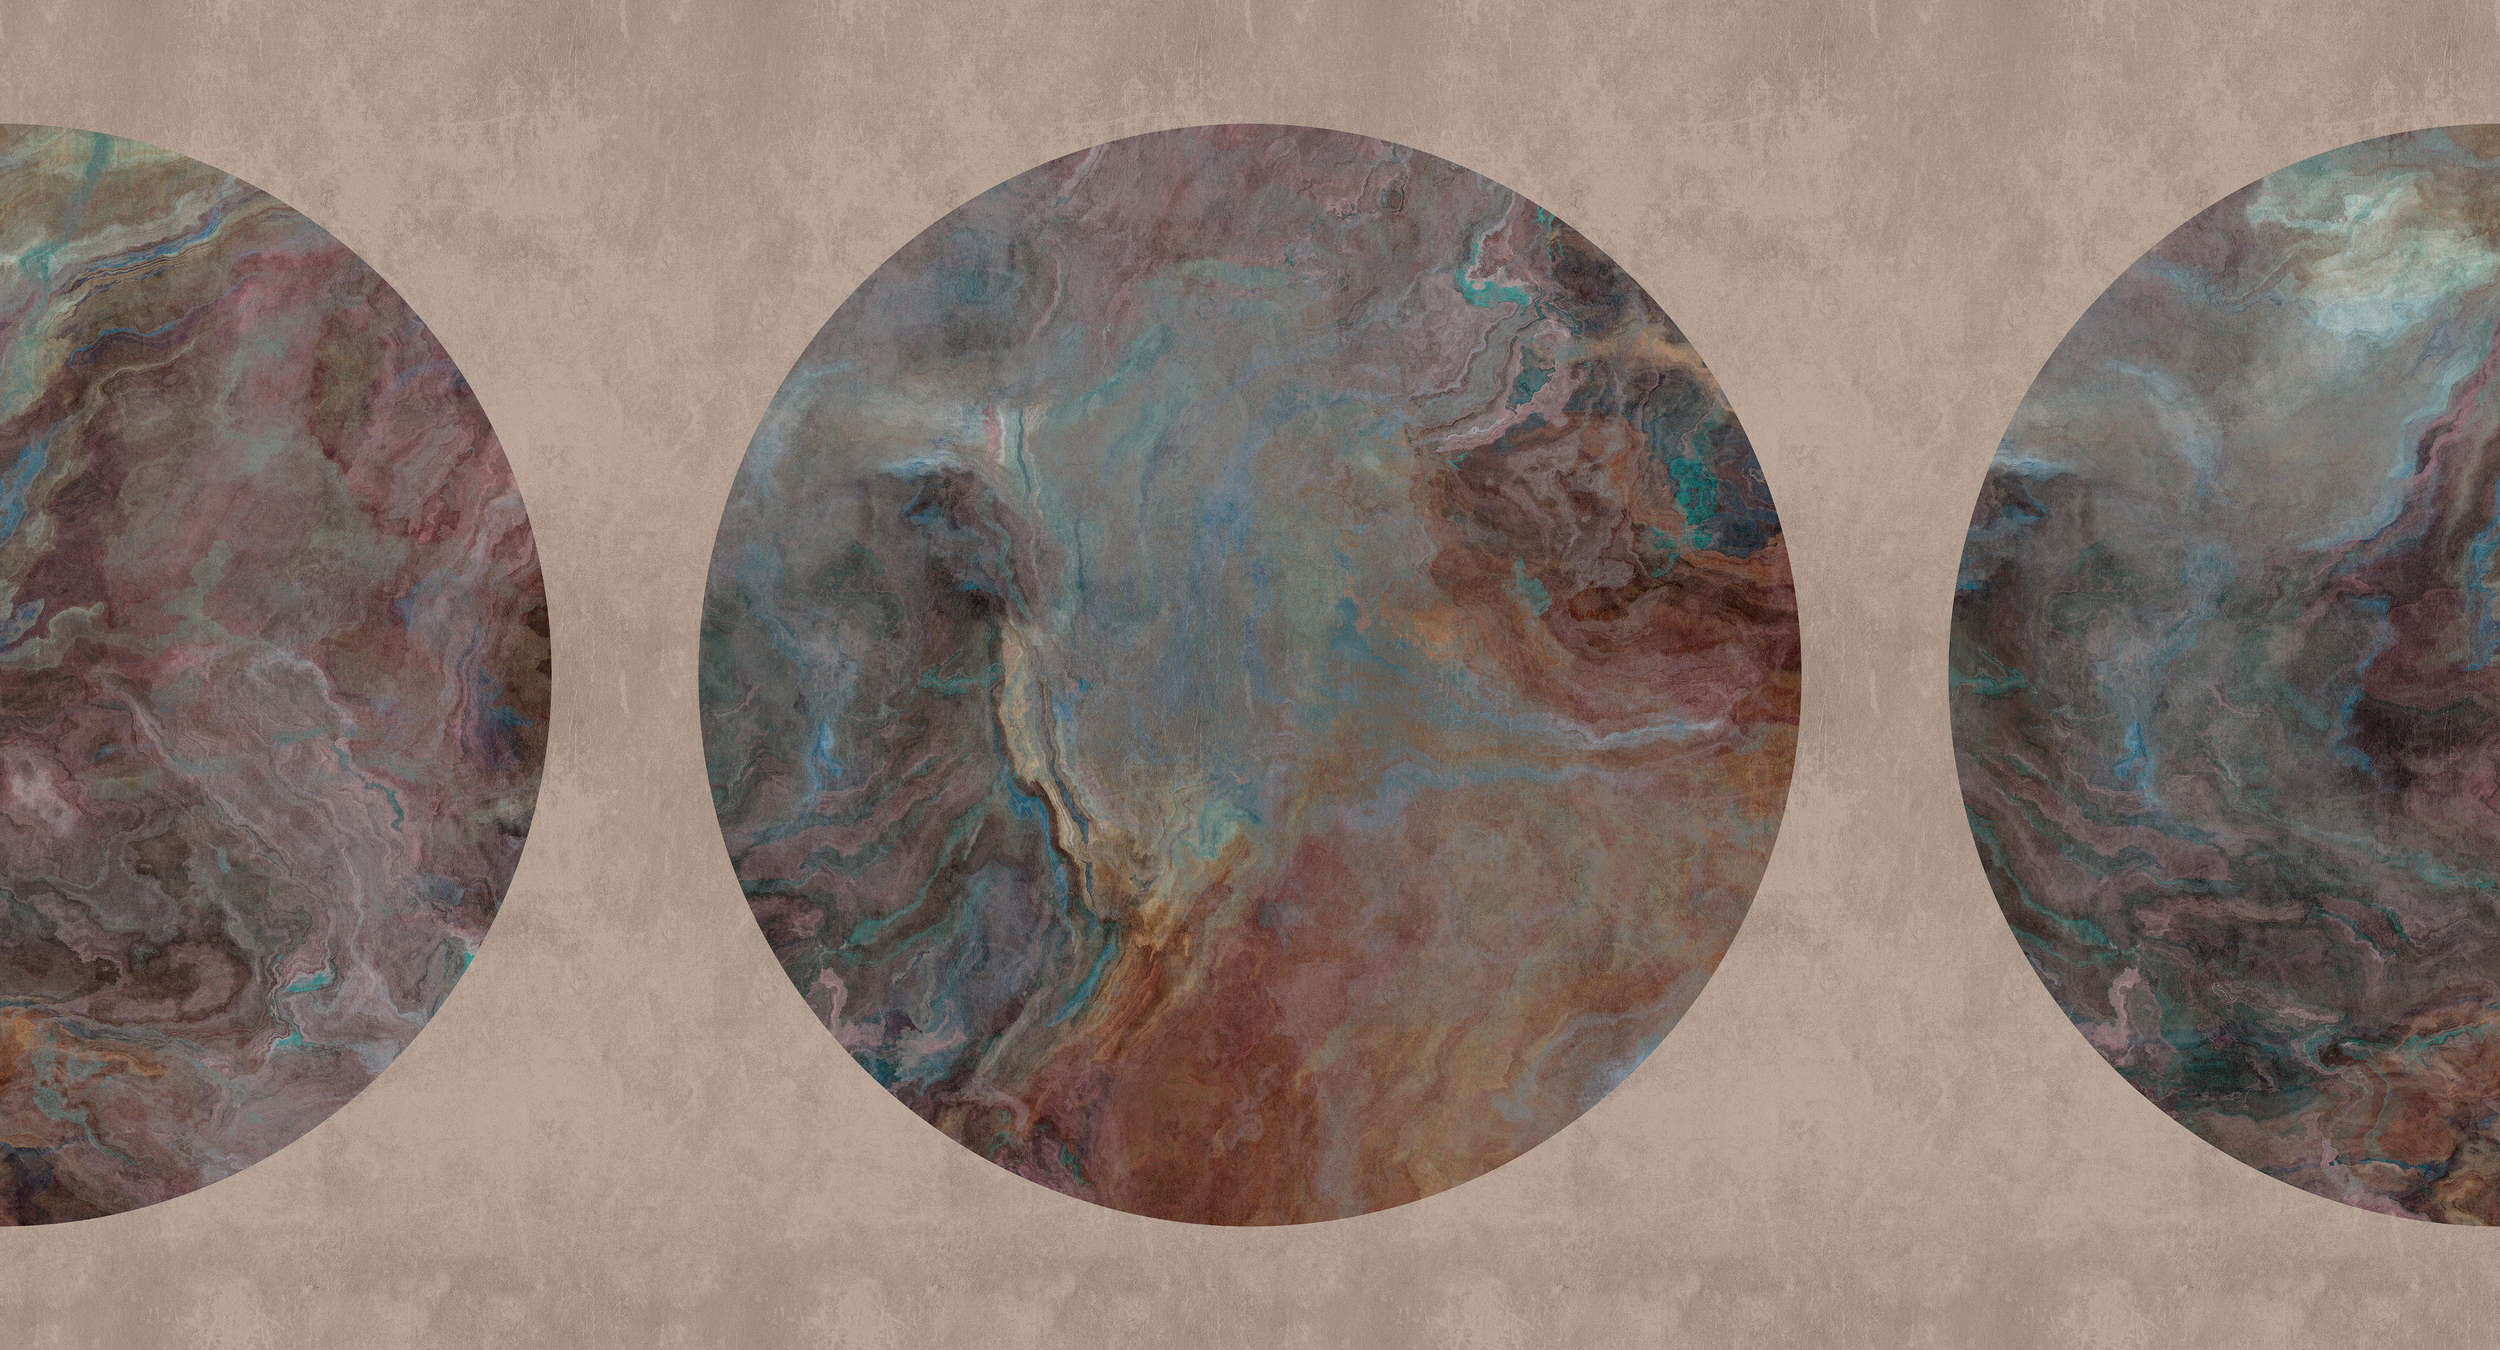             Jupiter 1 - papier peint motif pierre marbrée cercle
        